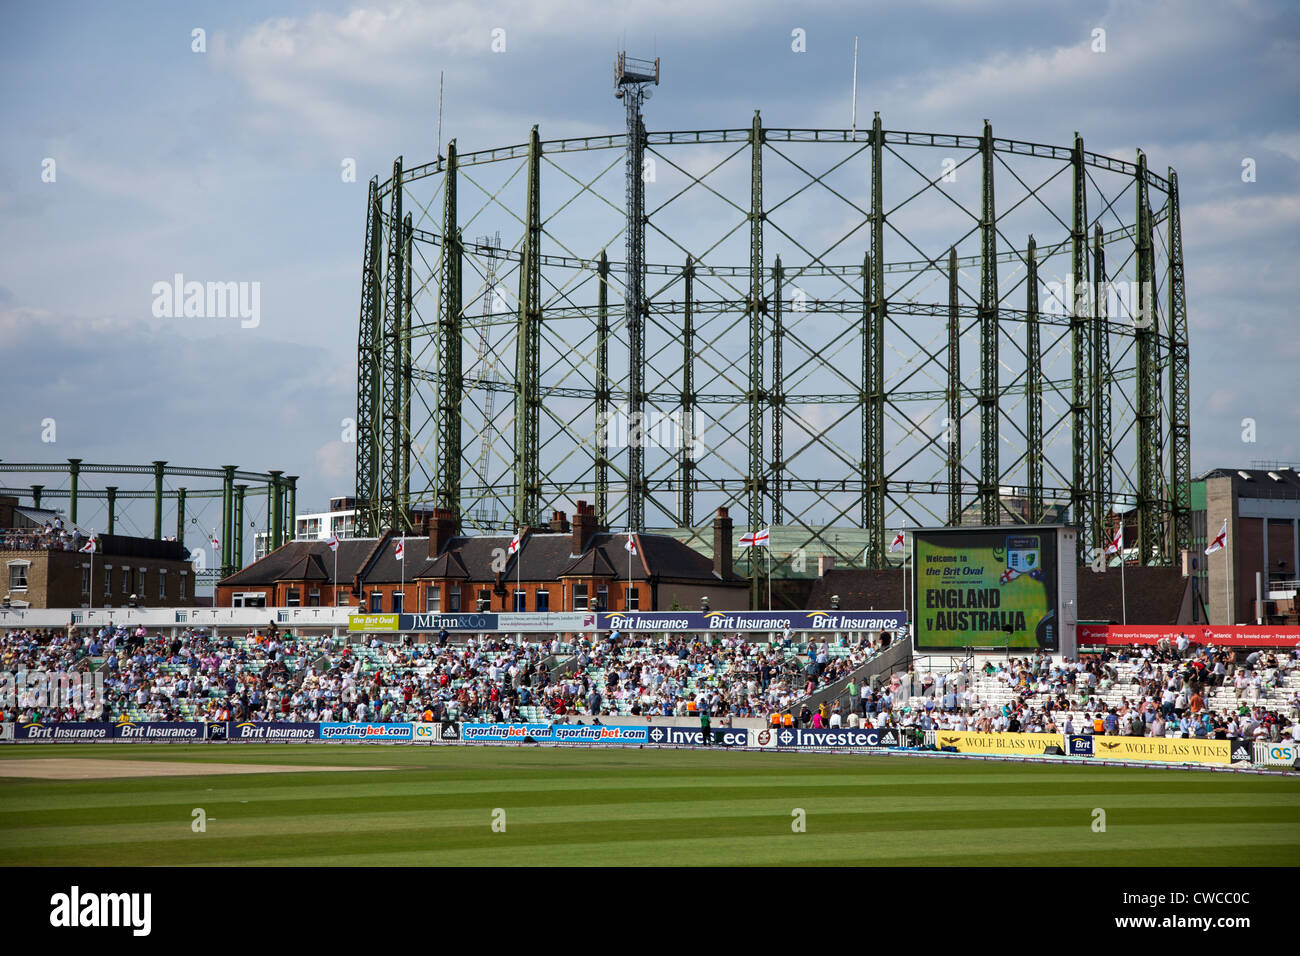 L'Oval Cricket Ground durant une période d'un jour international, l'Angleterre v Australie Royaume-Uni Banque D'Images